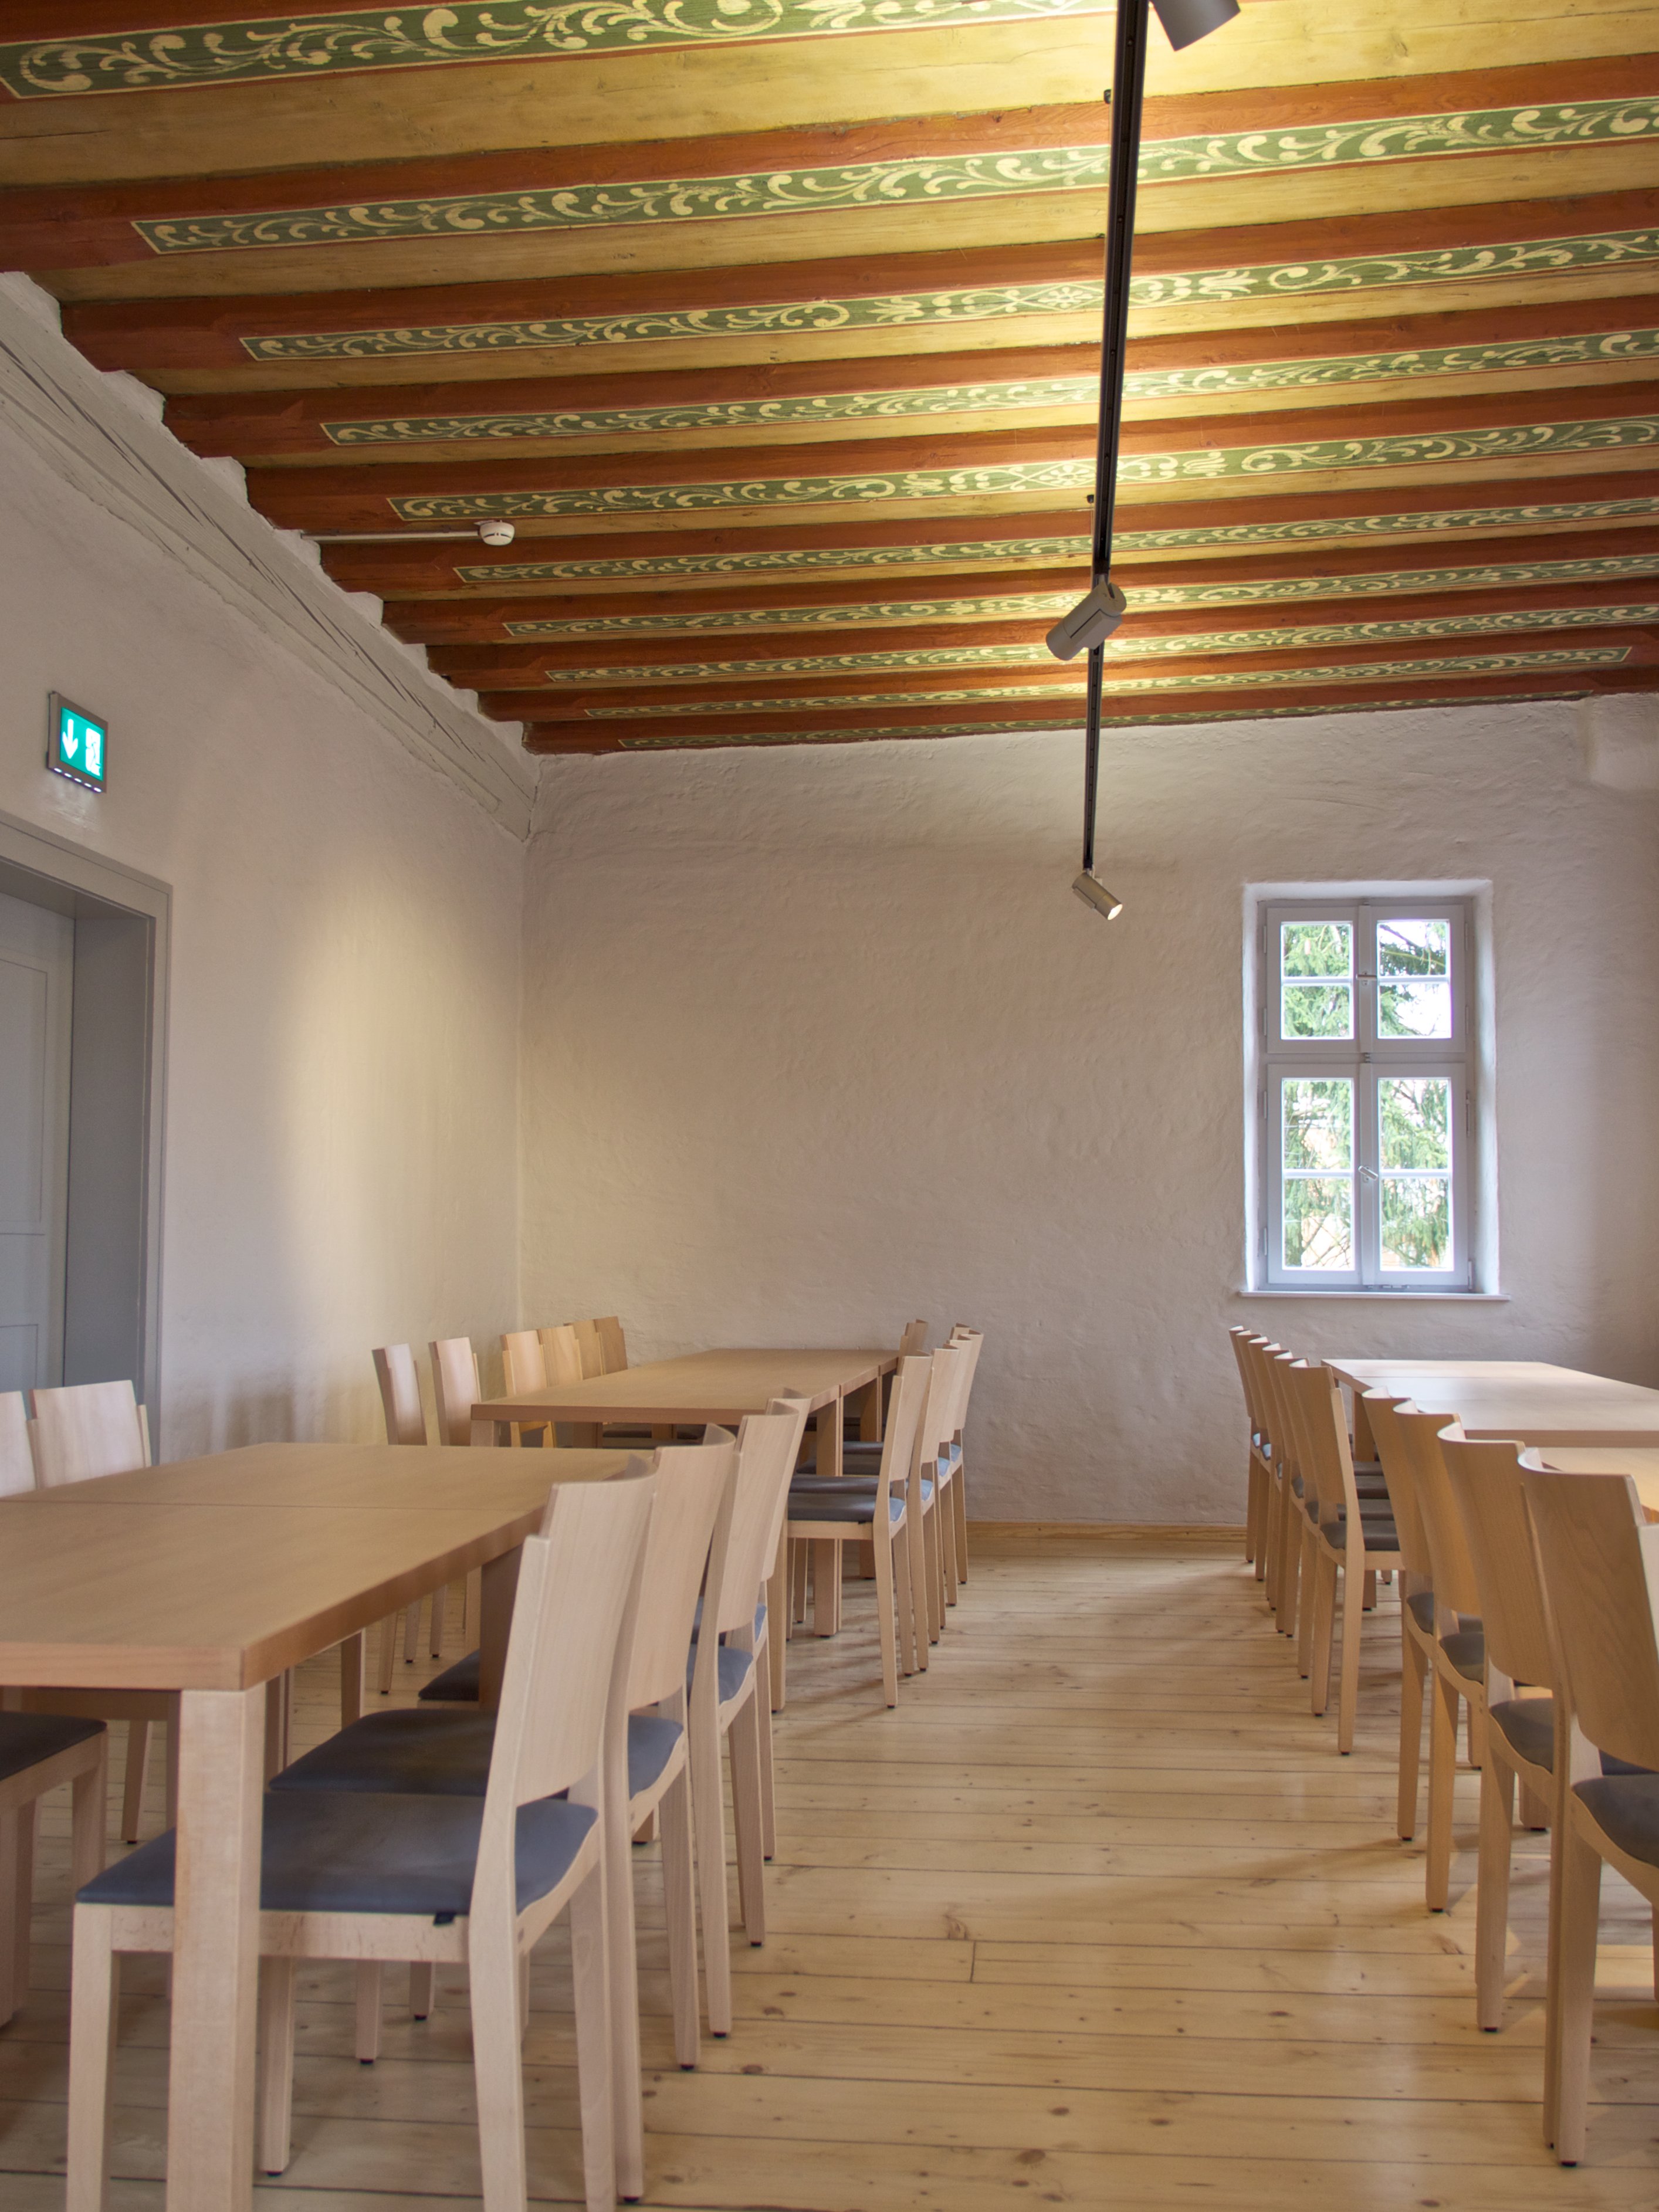 Hall dans le Le château des apiculteurs avec un plafond en bois peint